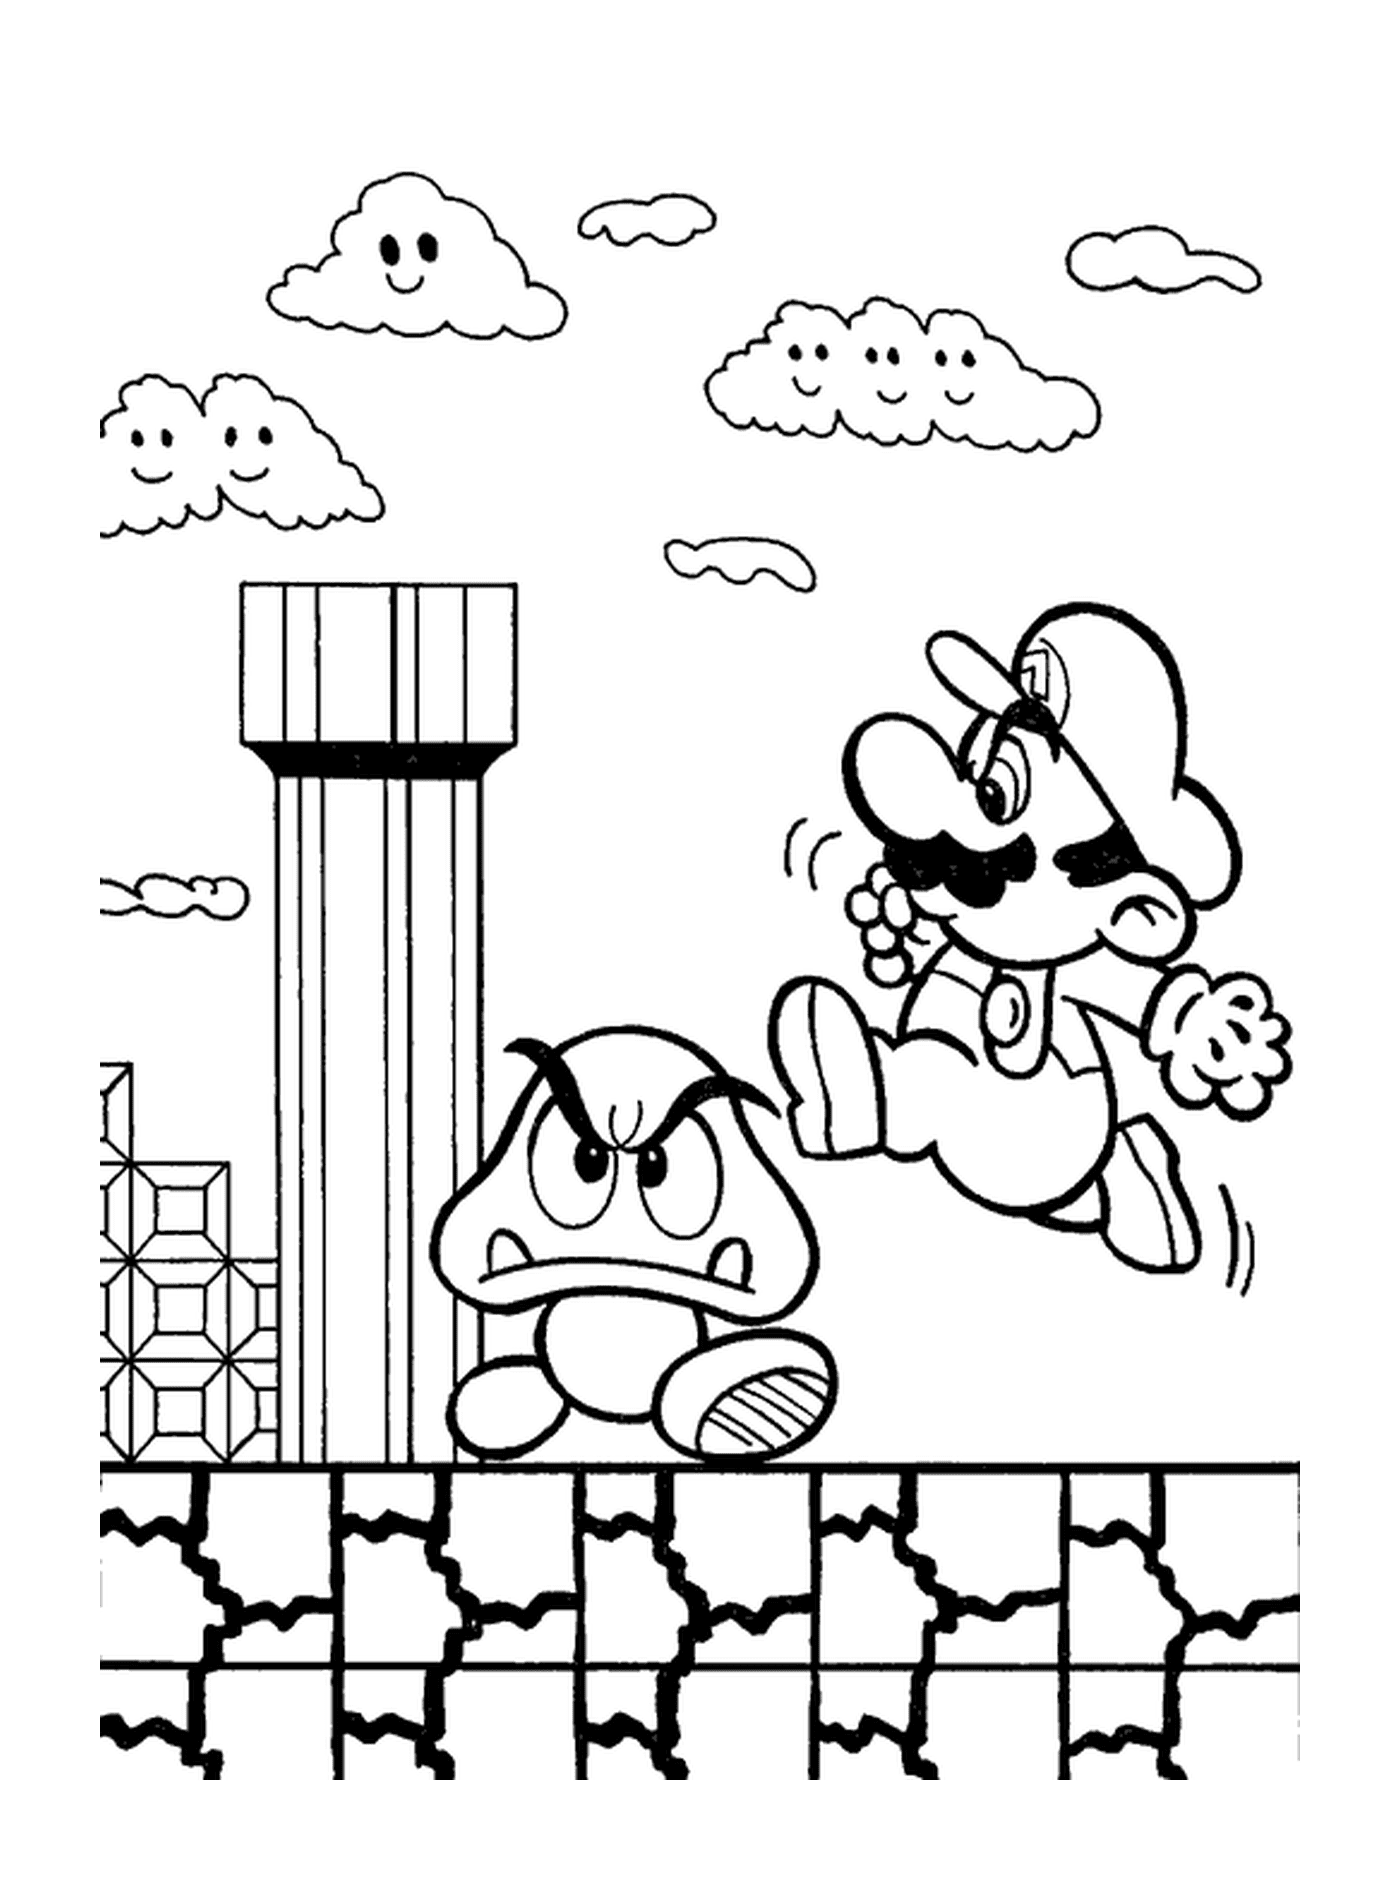  Mario salta em um cogumelo mágico 